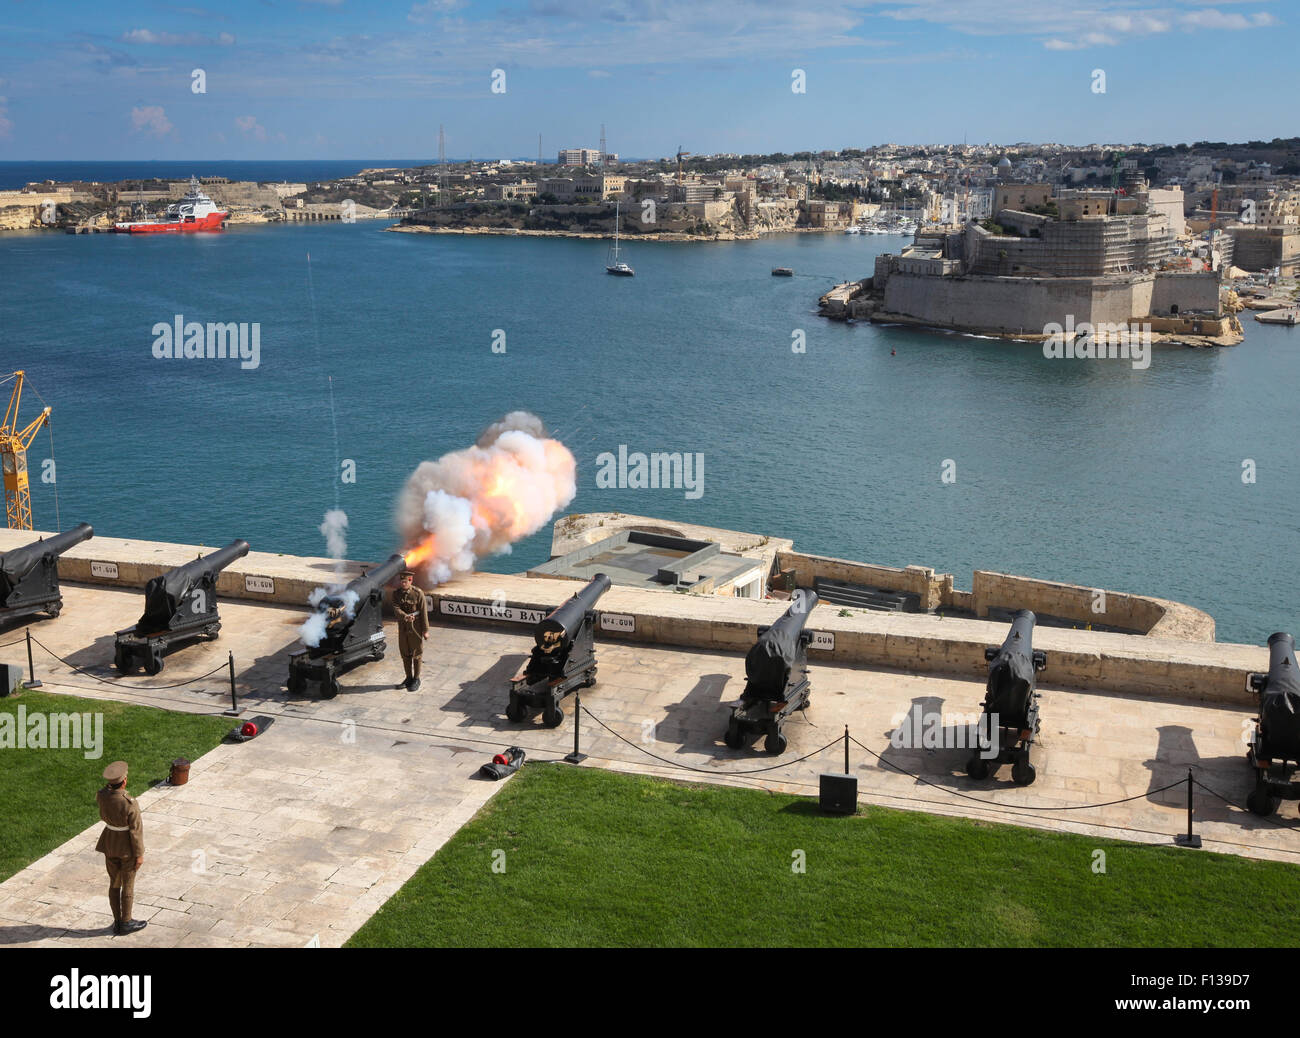 Le tir au canon de midi Batterie Salut, Upper Barracca Gardens, et le Grand  Port, La Valette, Malte Photo Stock - Alamy